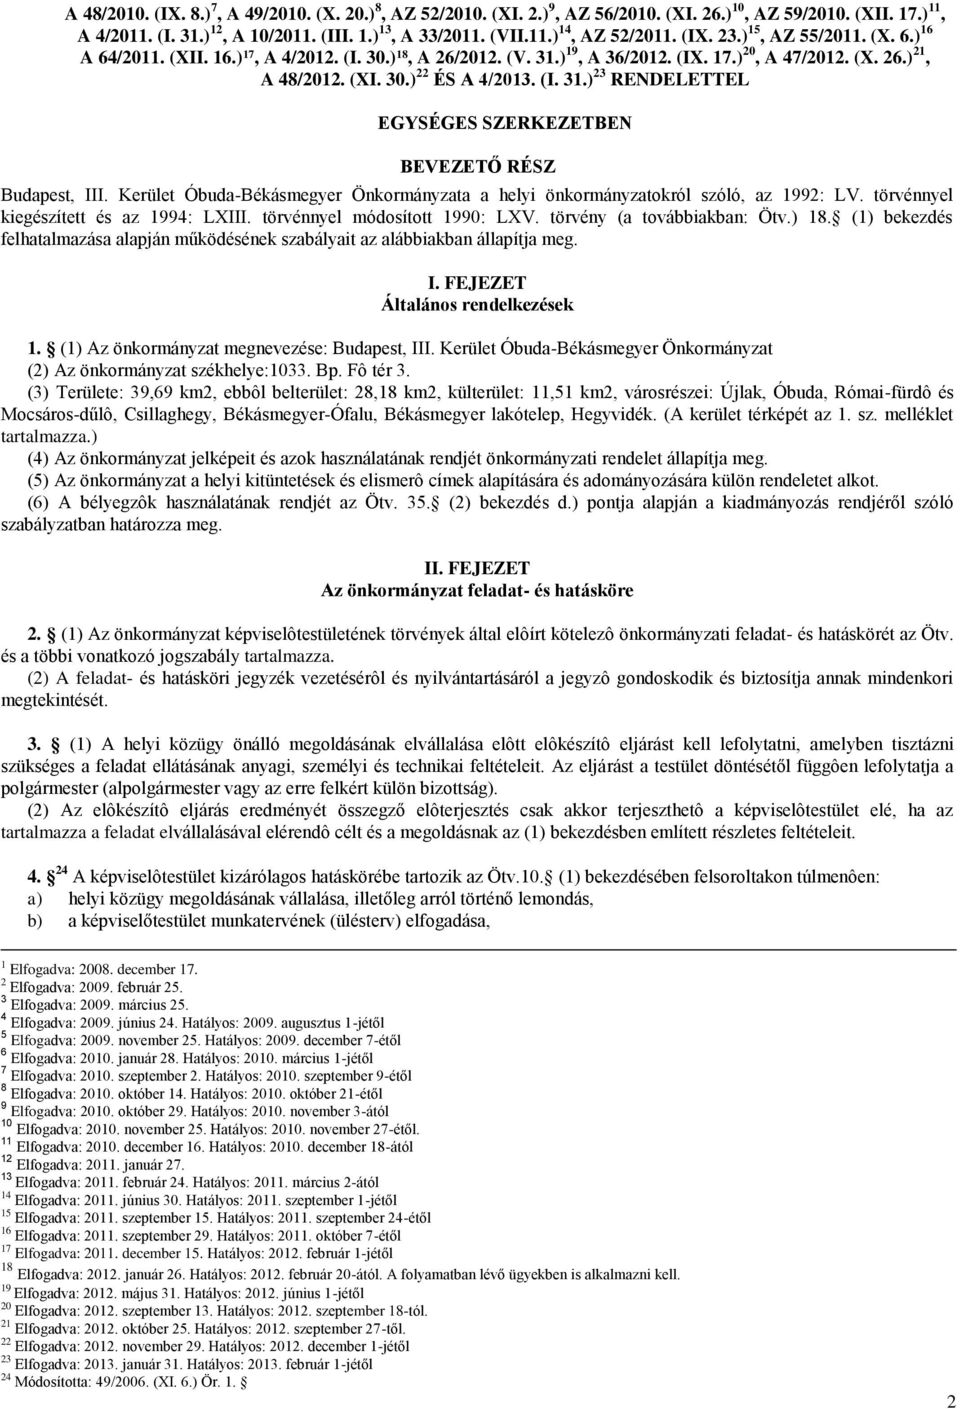 Kerület Óbuda-Békásmegyer Önkormányzata a helyi önkormányzatokról szóló, az 1992: LV. törvénnyel kiegészített és az 1994: LXIII. törvénnyel módosított 1990: LXV. törvény (a továbbiakban: Ötv.) 18.